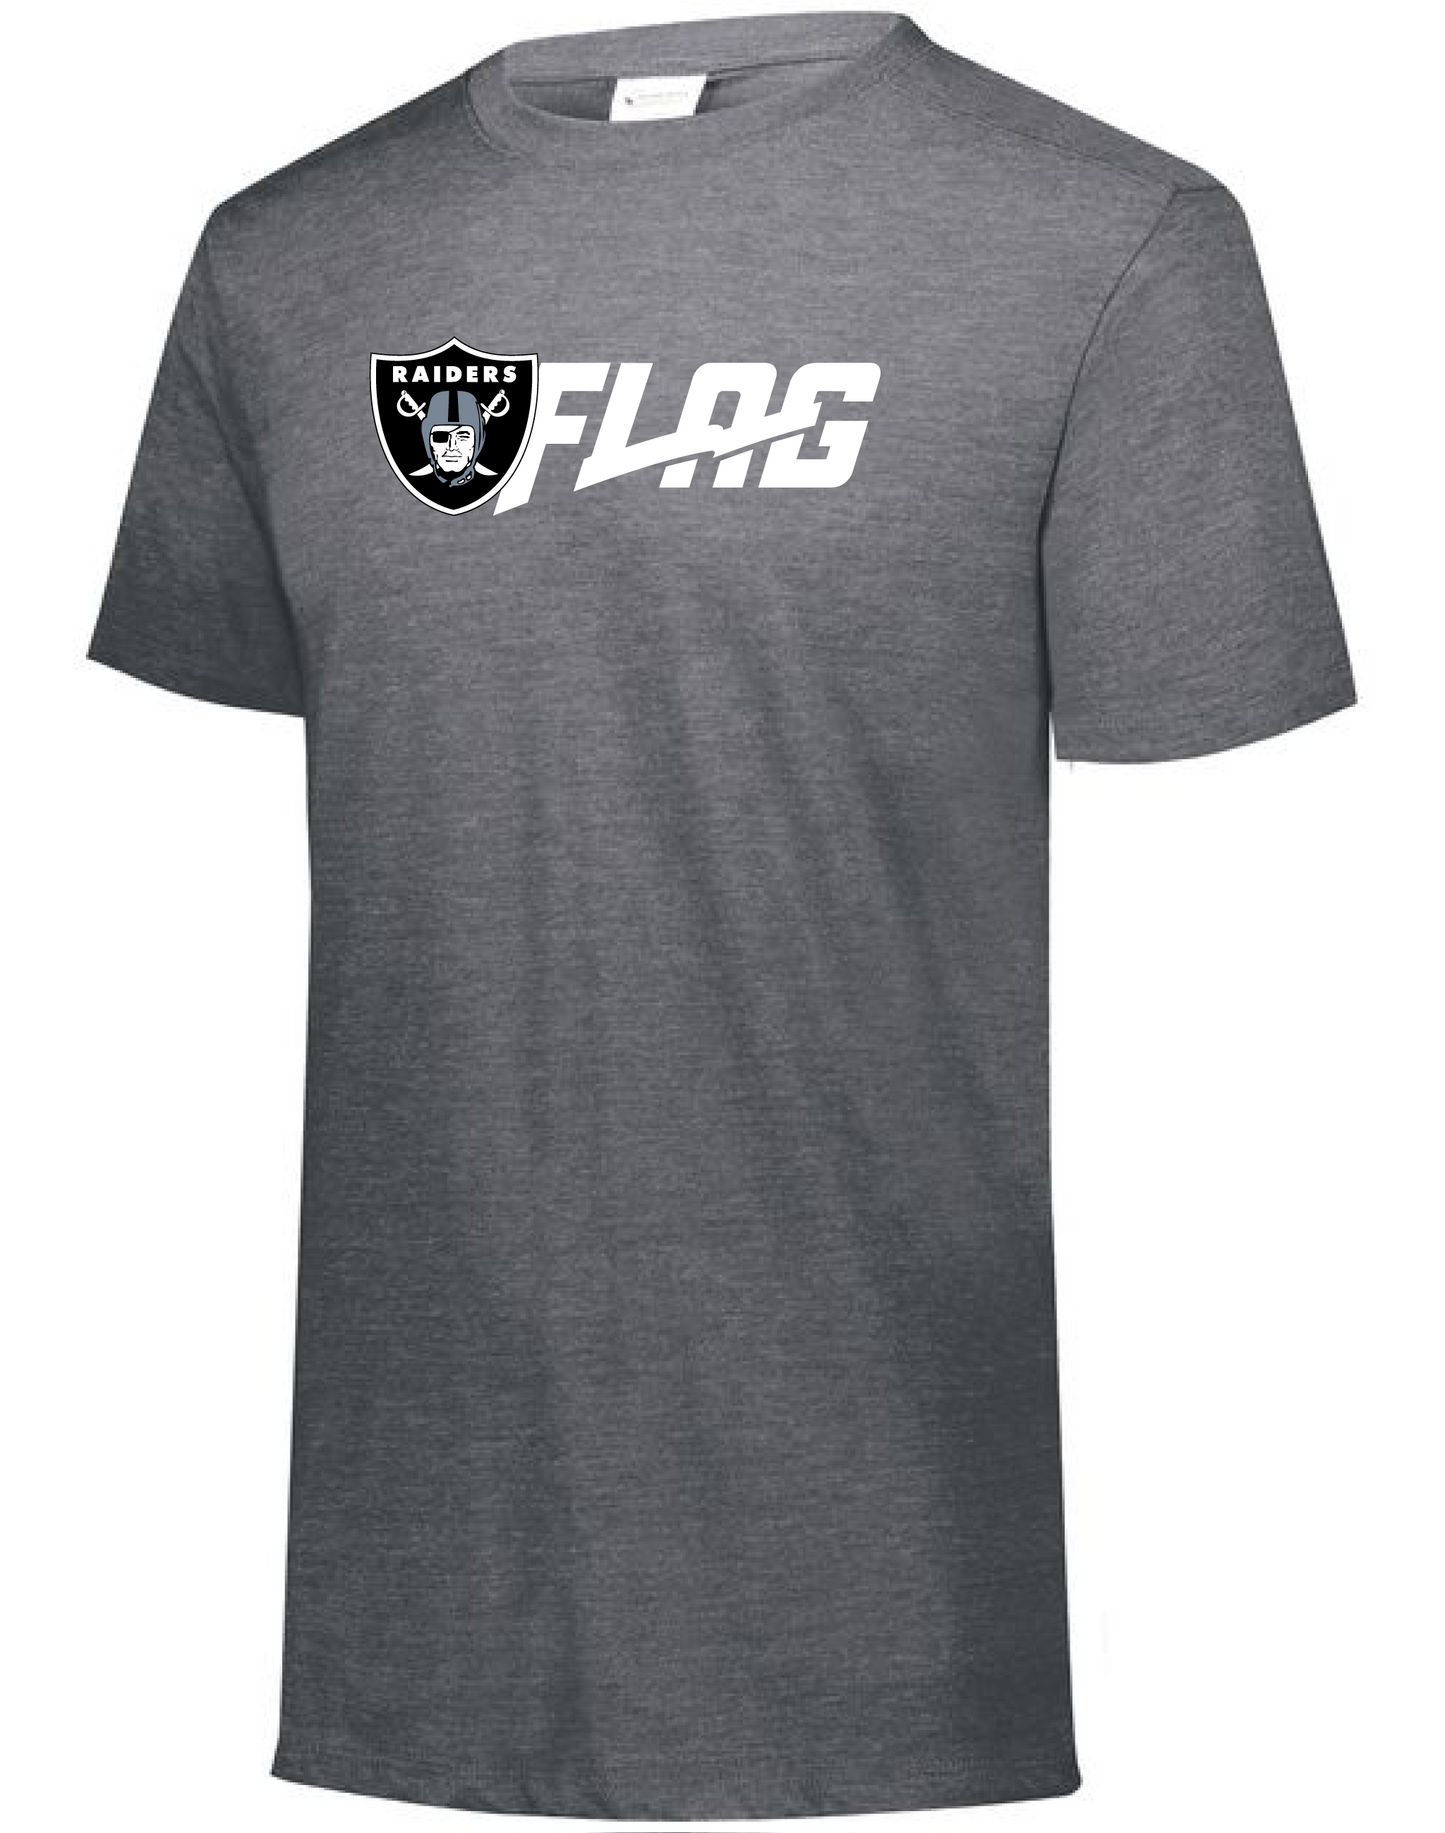 Tri Blend T Shirt - Ladies - Las Vegas Raiders